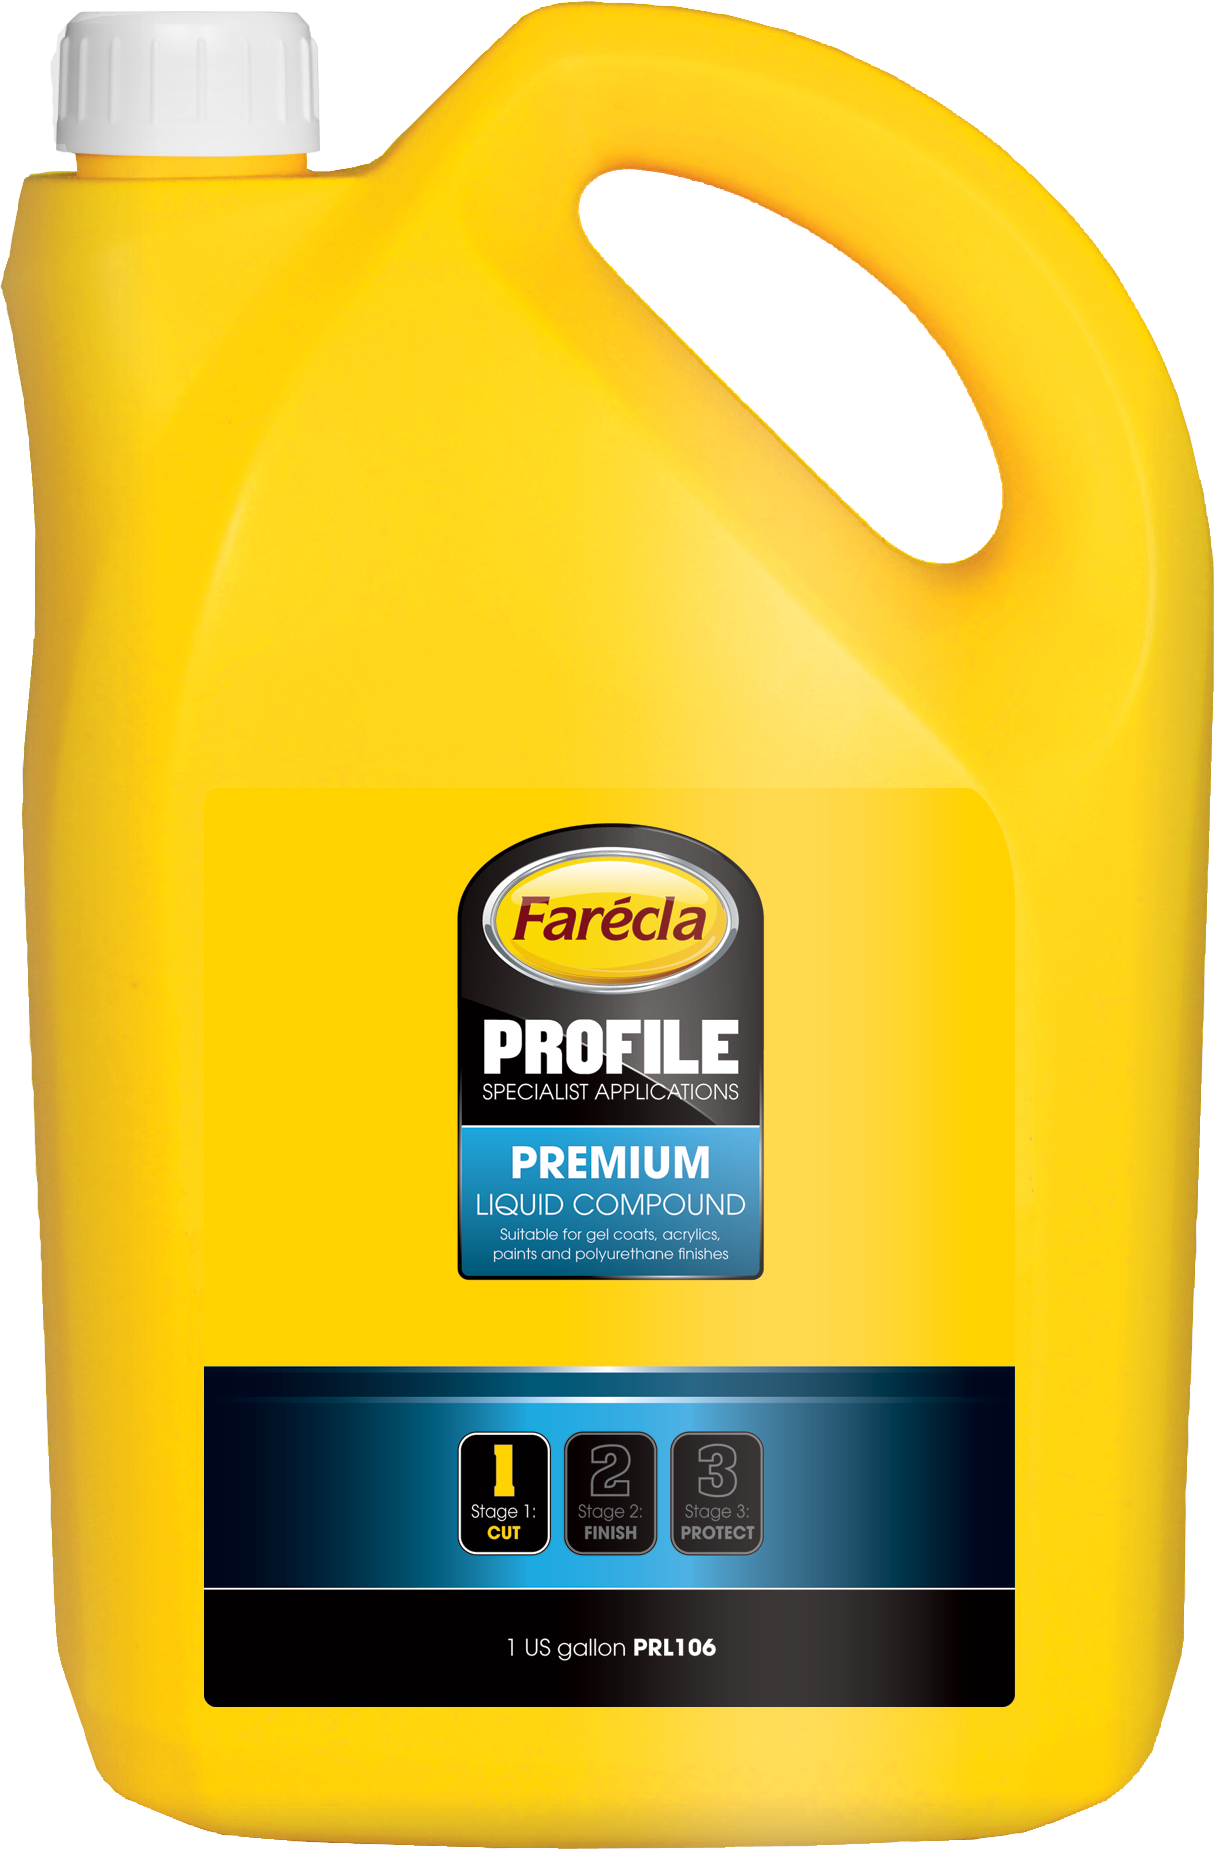 Profile Premium Liquid Полировальная эмульсия 1 US галлон, Farecla PRL106